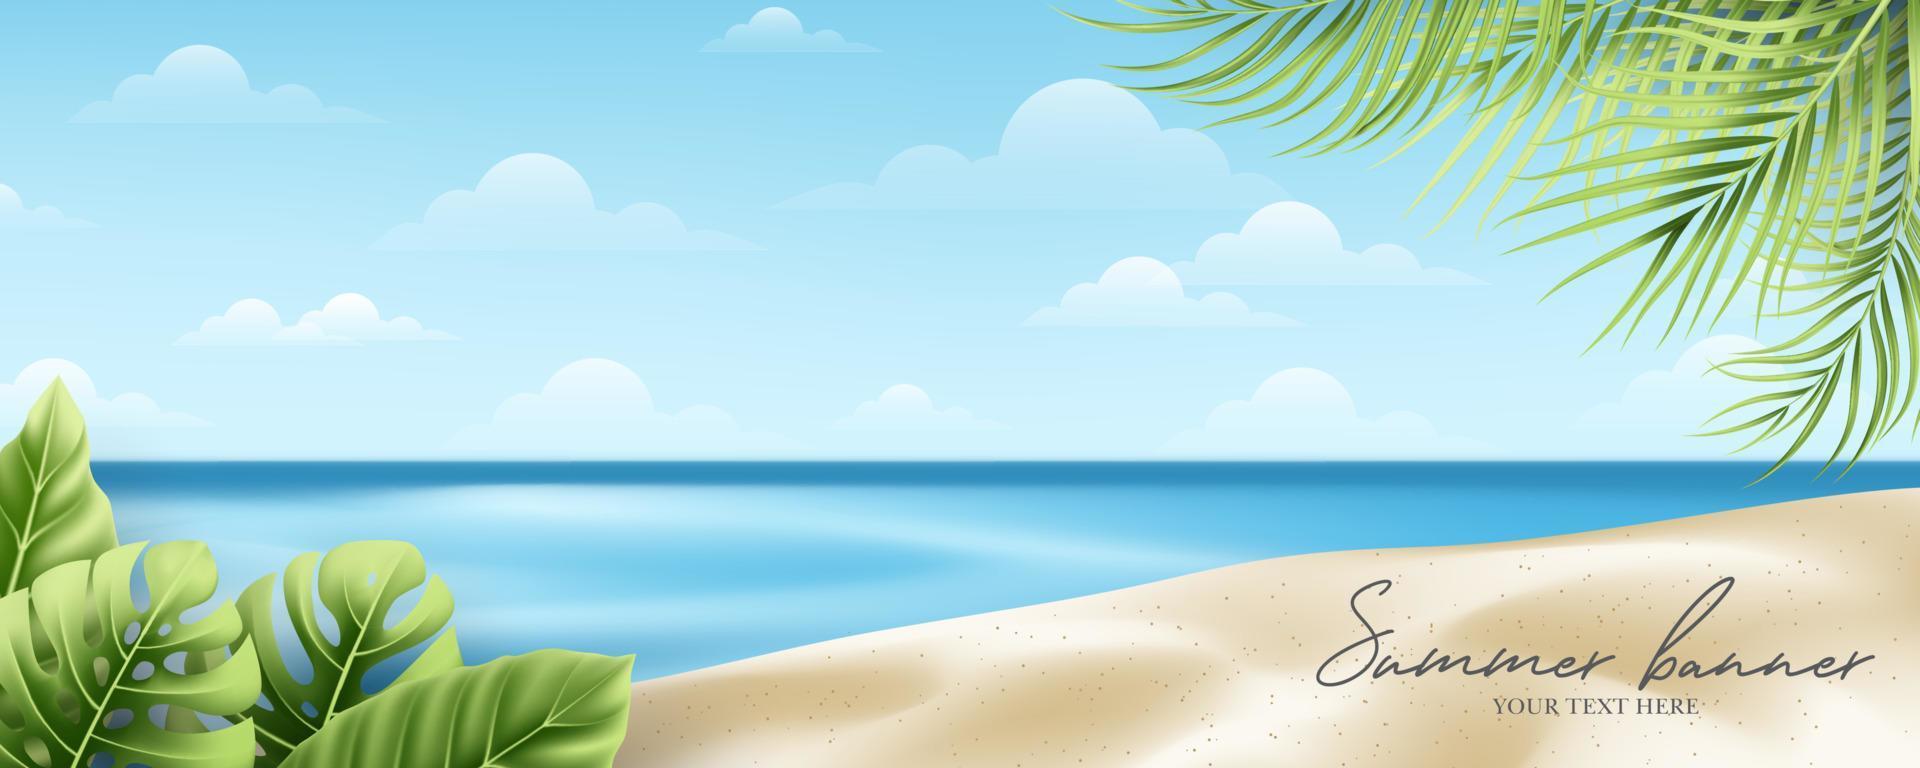 sommar och semester banner koncept på vacker tropisk strand och lövverk bakgrund vektor